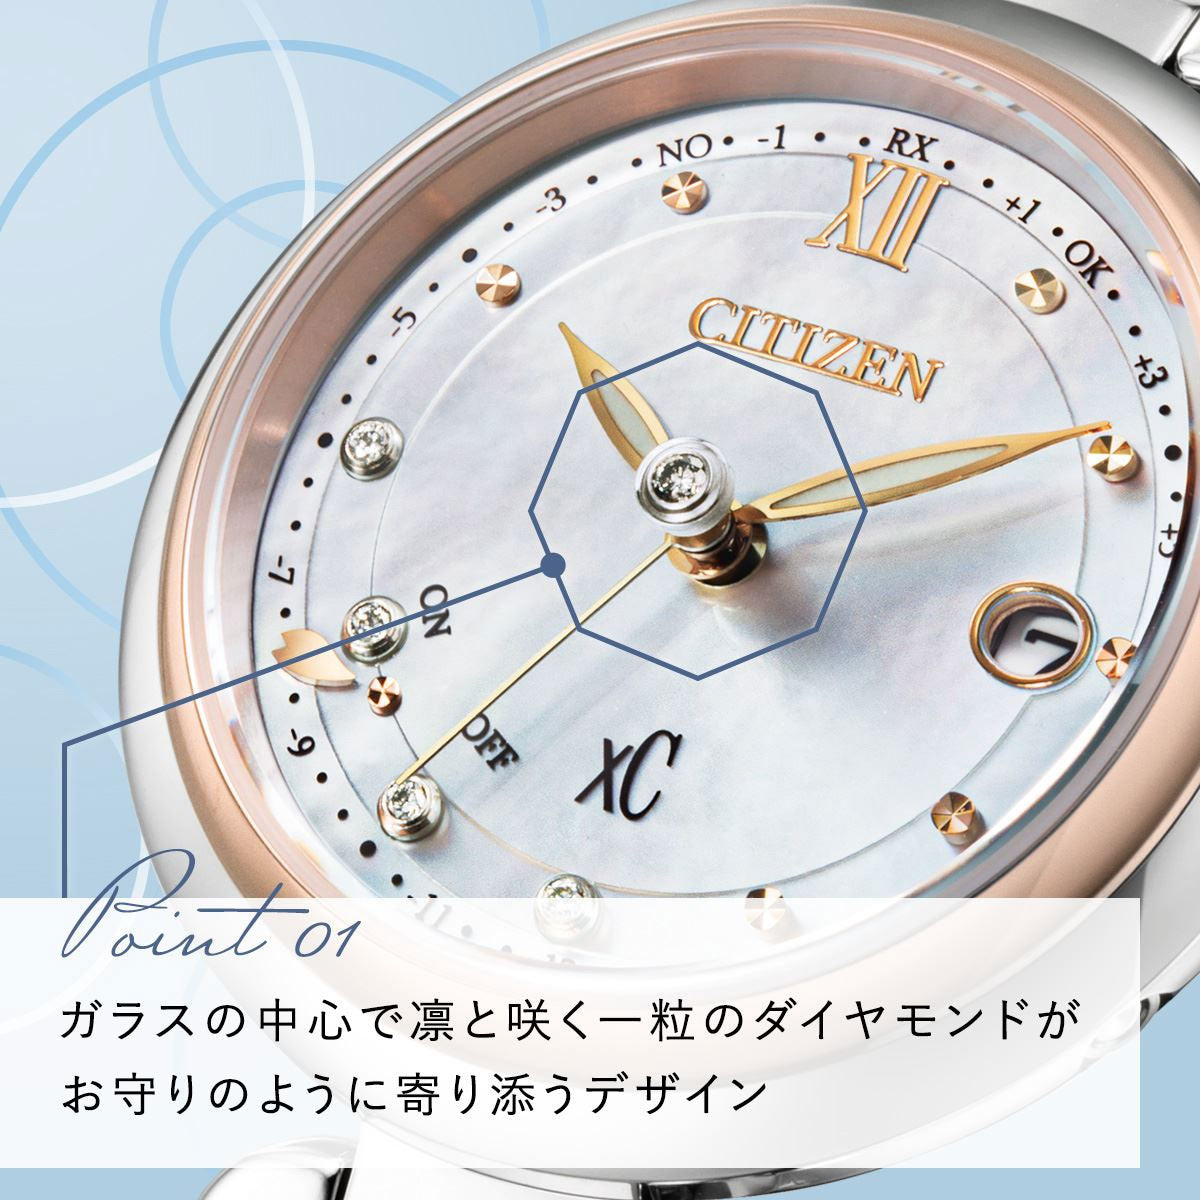 シチズン クロスシー エコドライブ 電波 xC フローレットダイヤモデル ES9466-65W ティタニア ハッピーフライト レディース 腕時計 CITIZEN mizu collection